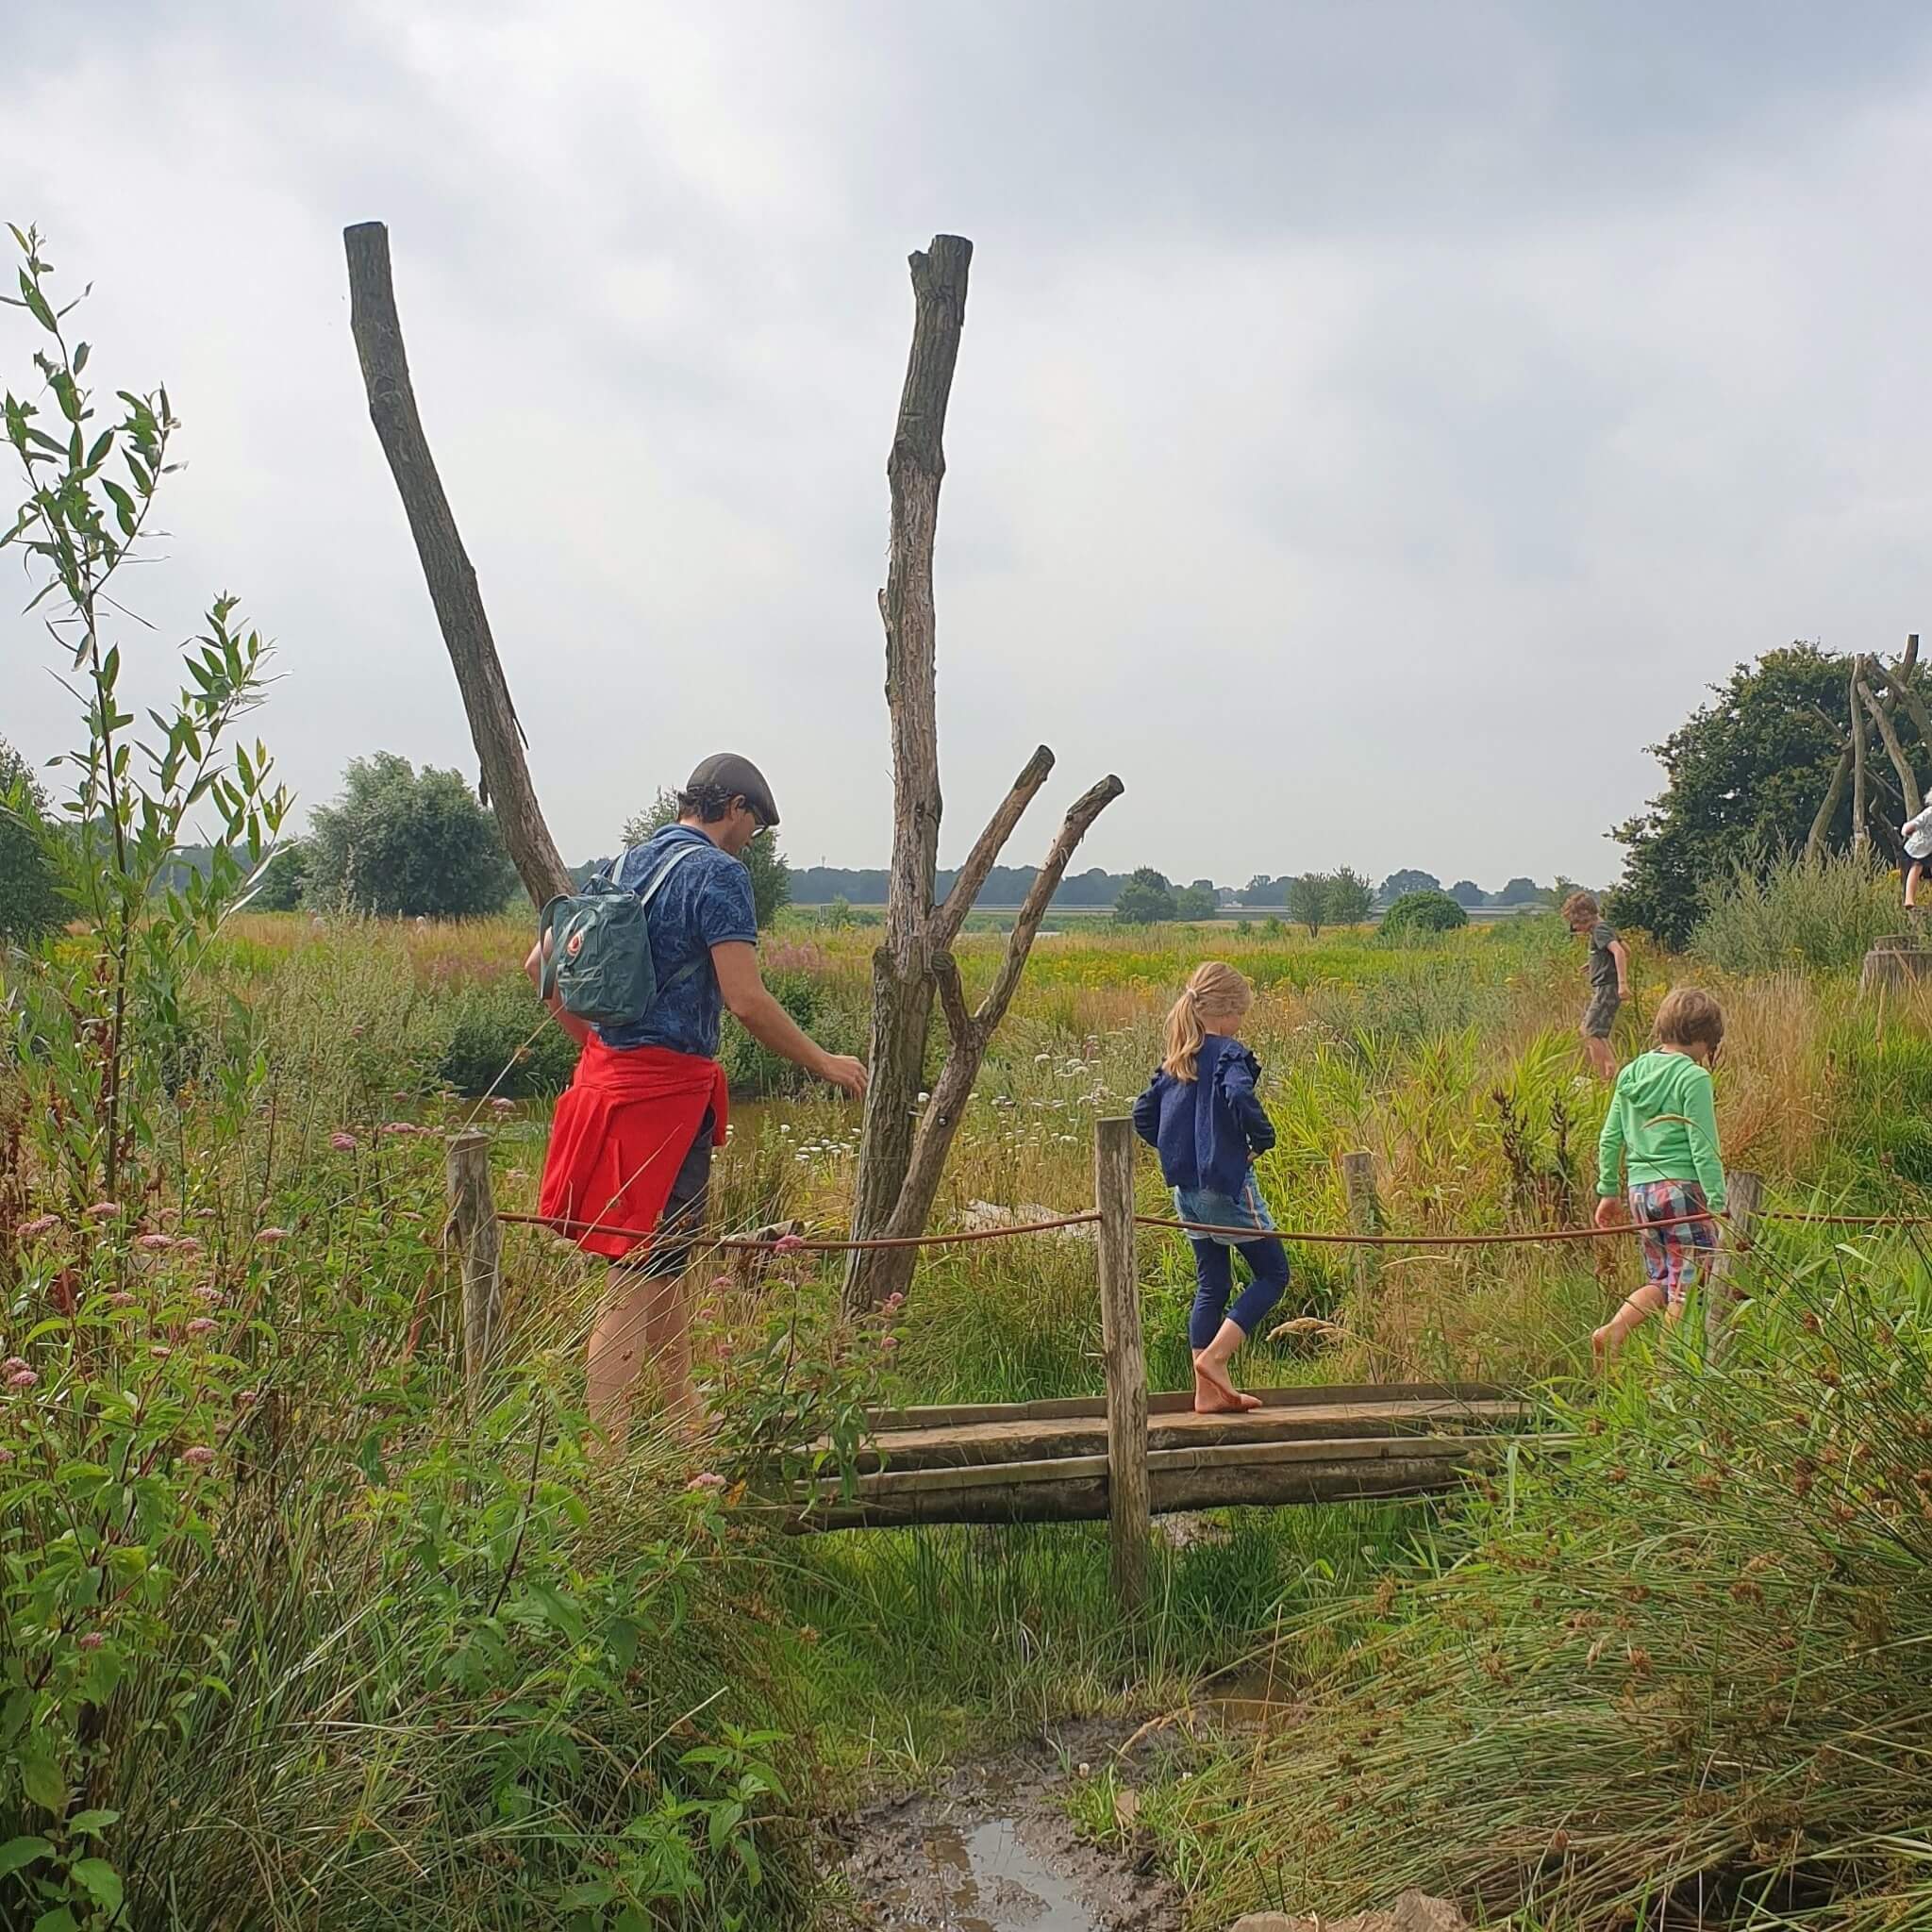 De leukste buitenspeeltuinen en binnenspeeltuinen in heel Nederland. Zoals blotevoetenpaden en pluktuinen, de natuur in met kinderen. Dit is natuuractiviteitencentrum De Koppel in Hardenberg, Overijssel.